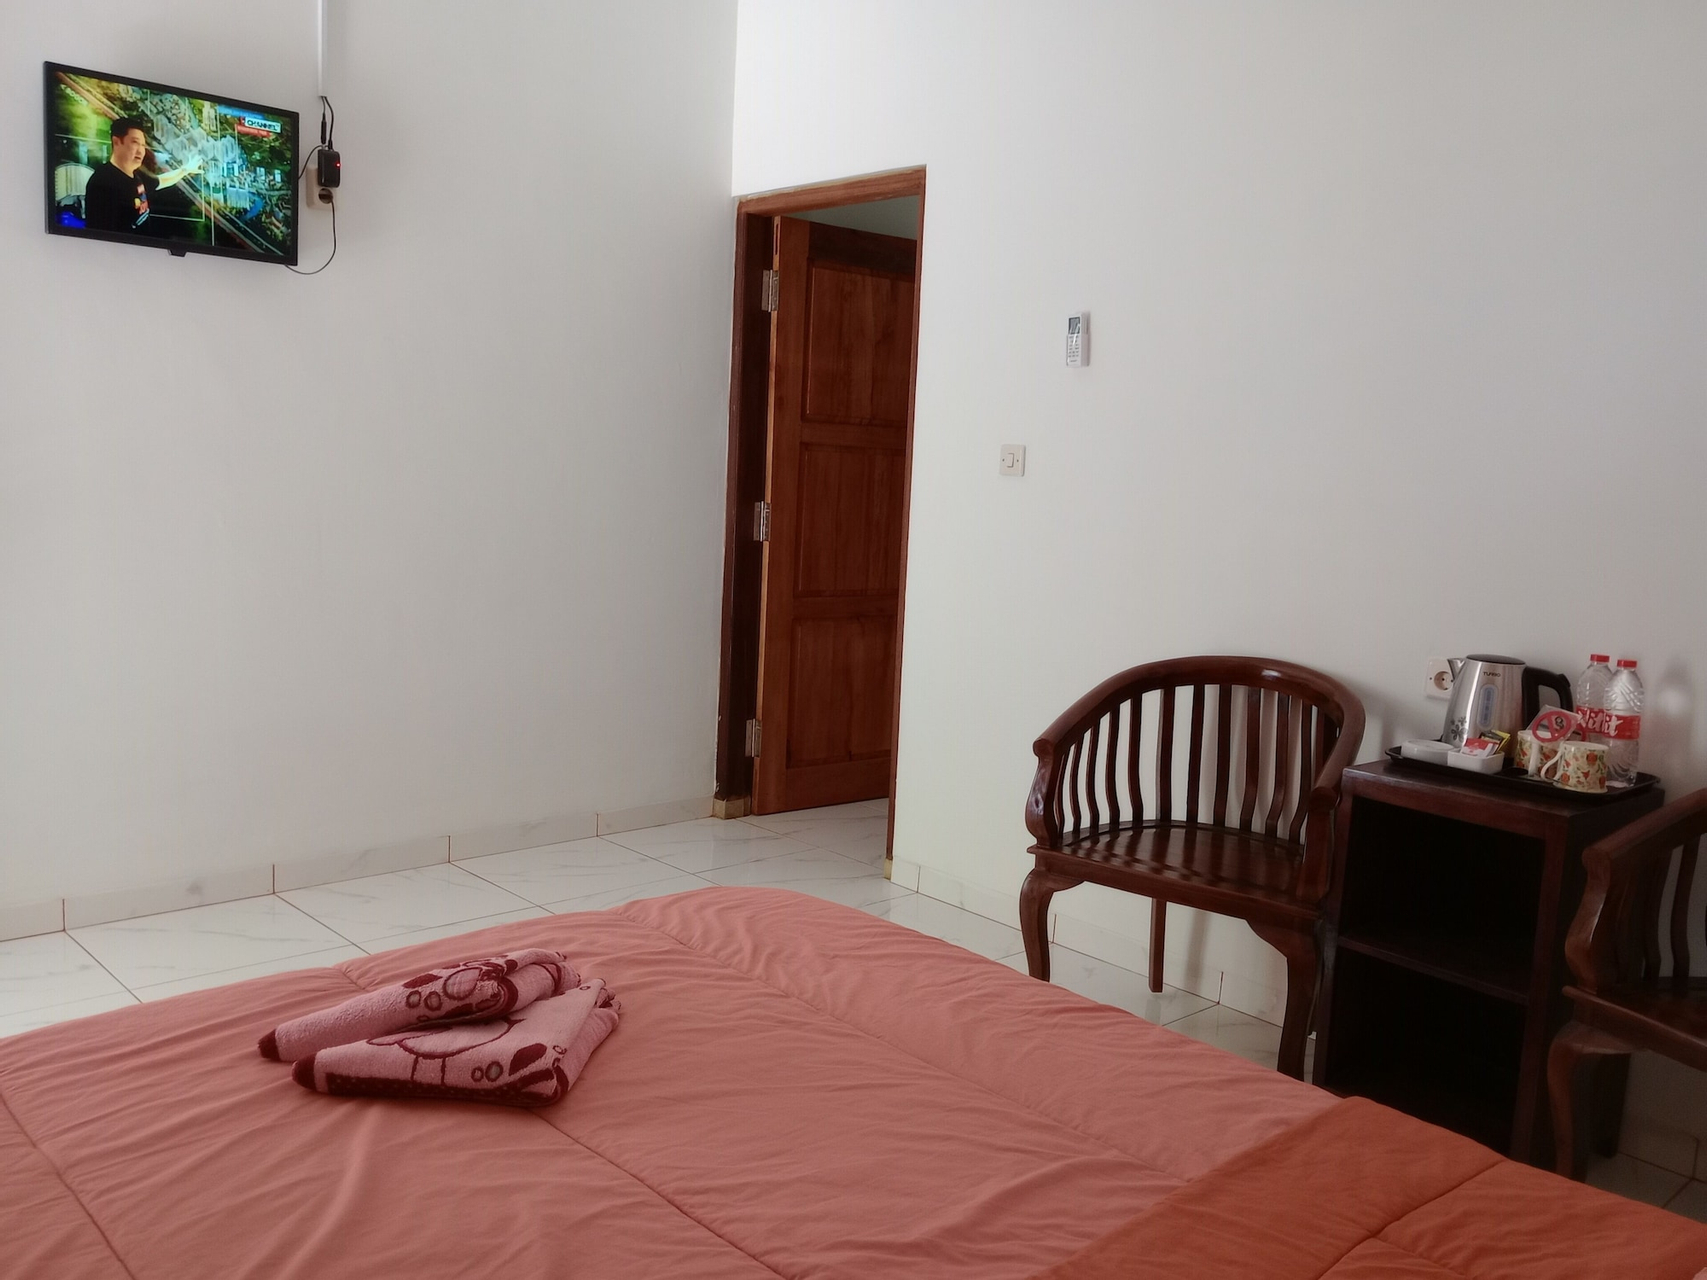 Bedroom 5, Griyo Dan Syariah, Magelang